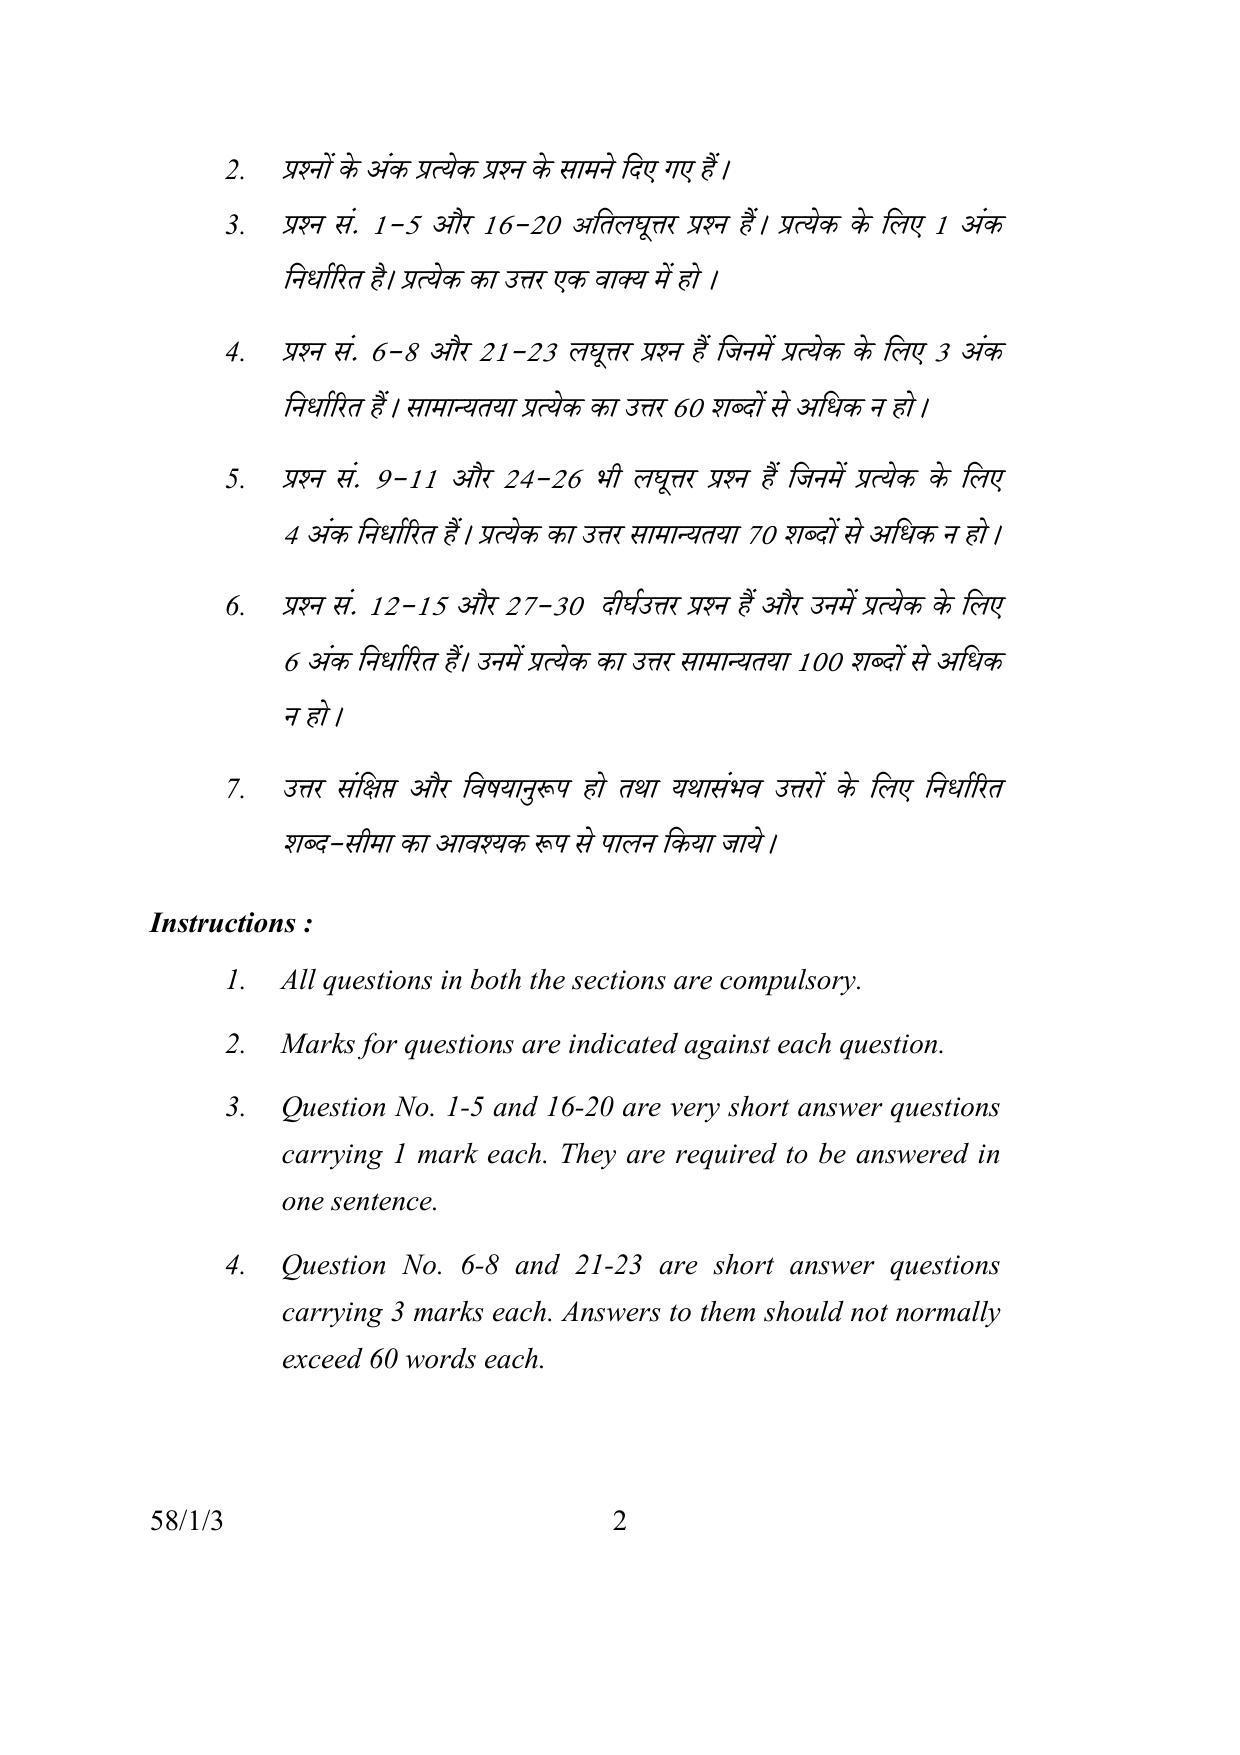 CBSE Class 12 58-1-3 ECONOMICS 2016 Question Paper - Page 2